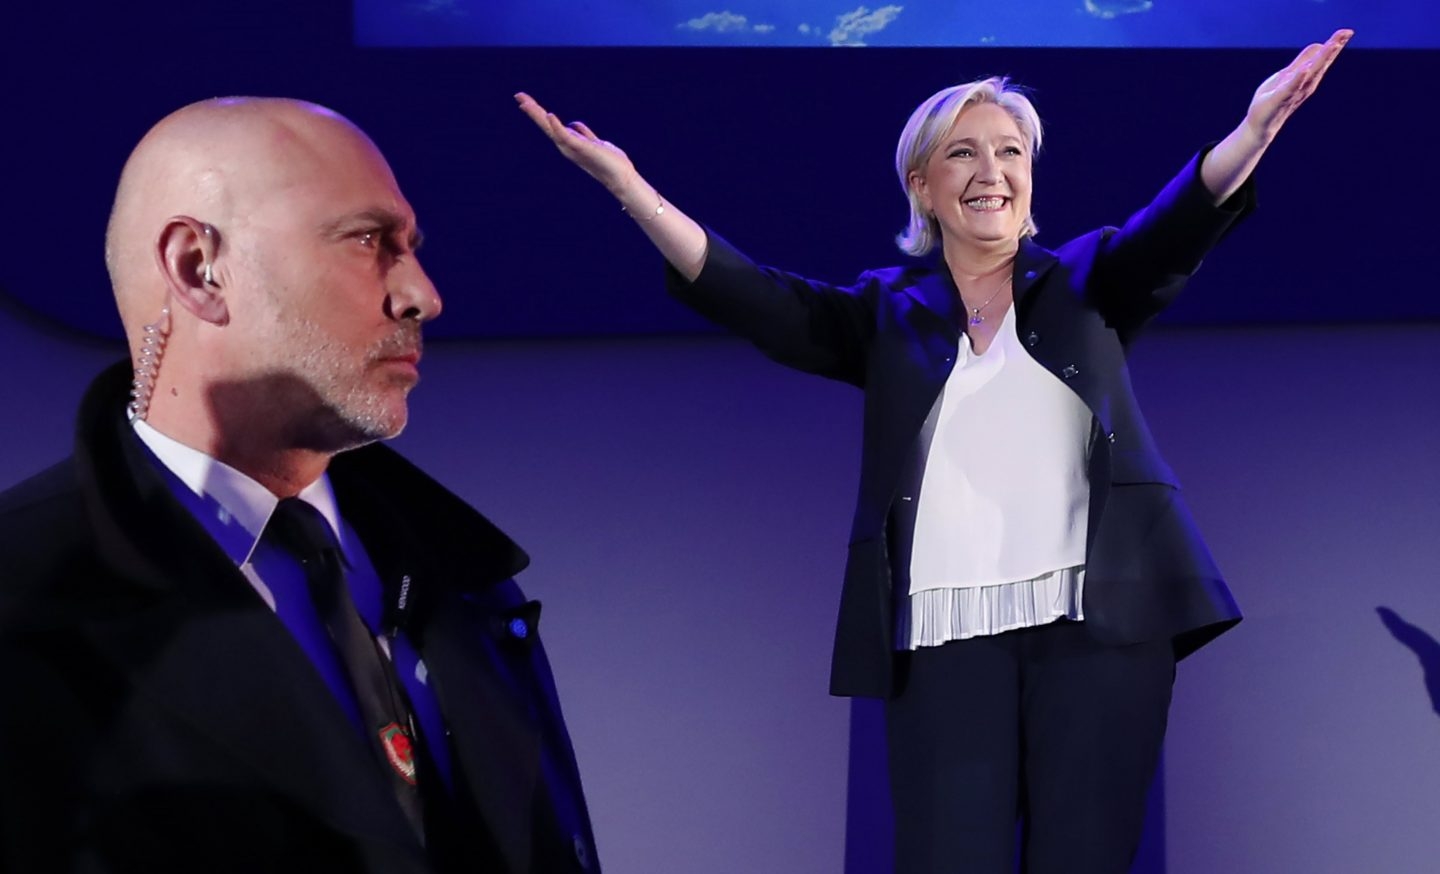 Marine Le Pen saluda tras las elecciones.